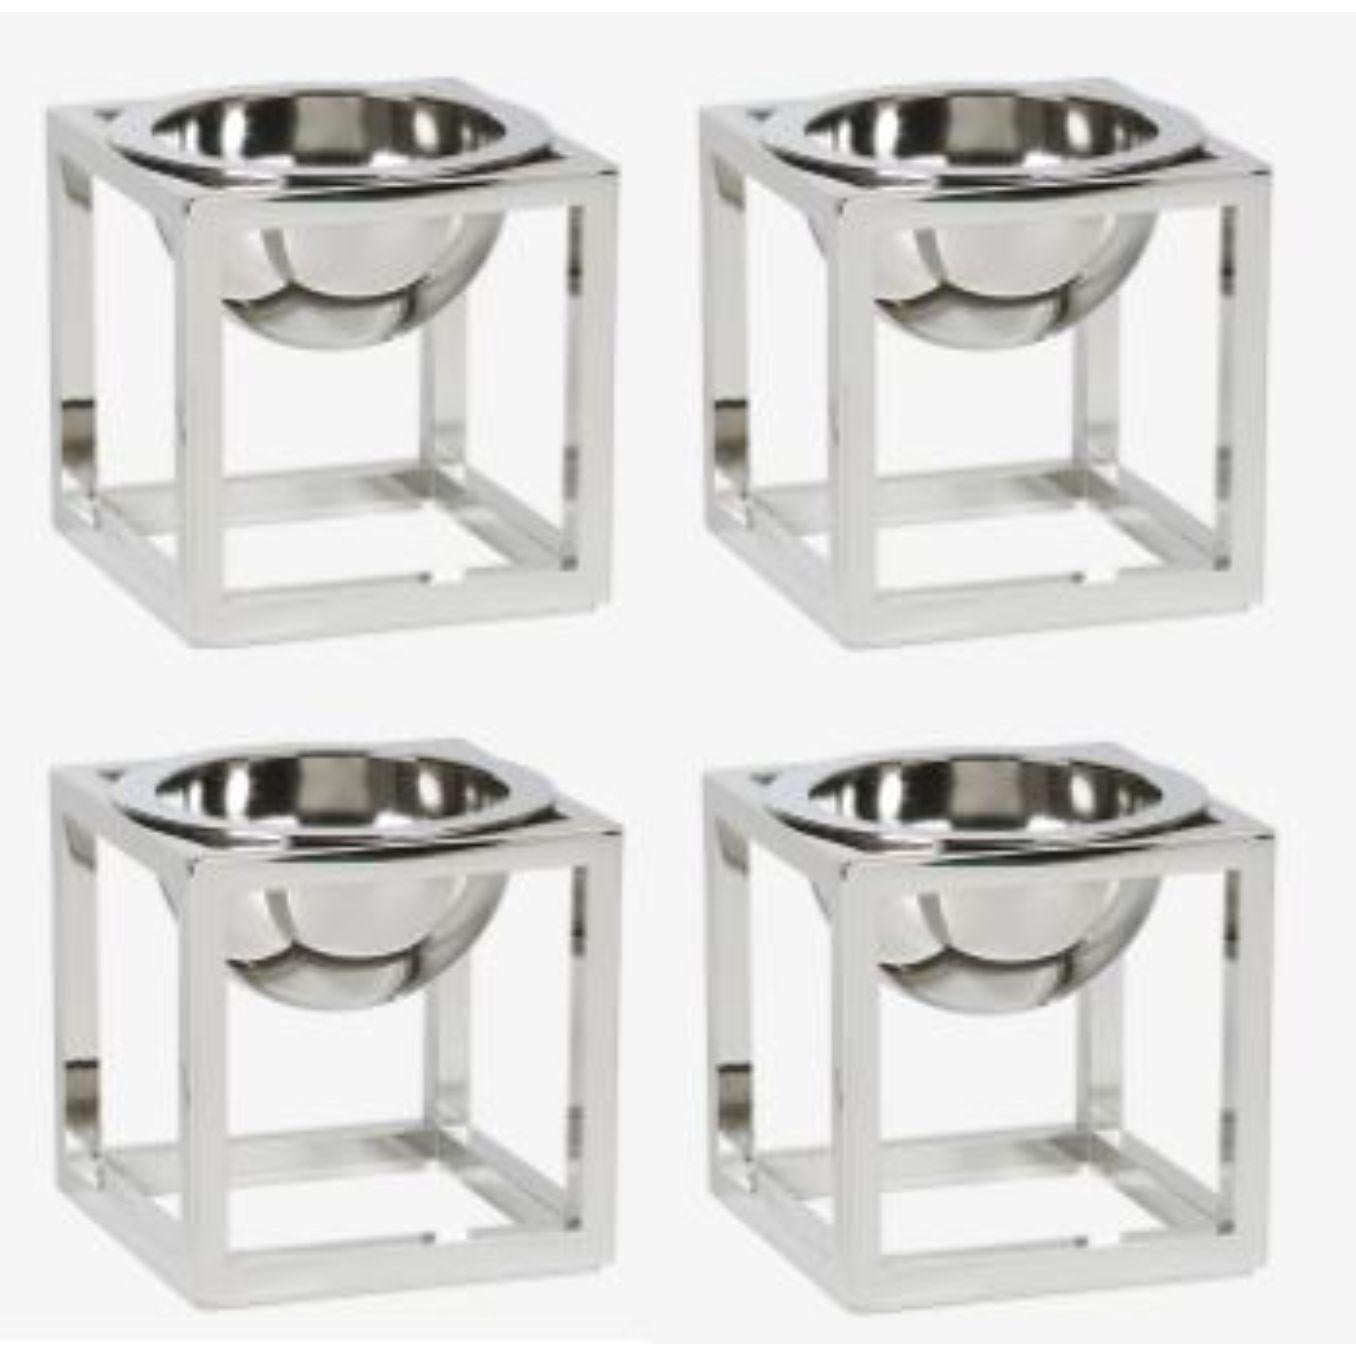 Ensemble de 4 mini-bols Kubus en nickel de Lassen
Dimensions : D 7 x L 7 x H 7 cm 
Matériaux : Métal 
Poids : 0.40 Kg

Le Kubus Bowl est basé sur des croquis originaux de Mogens Lassen, et contient des éléments du Bauhaus, dont Mogens Lassen s'est